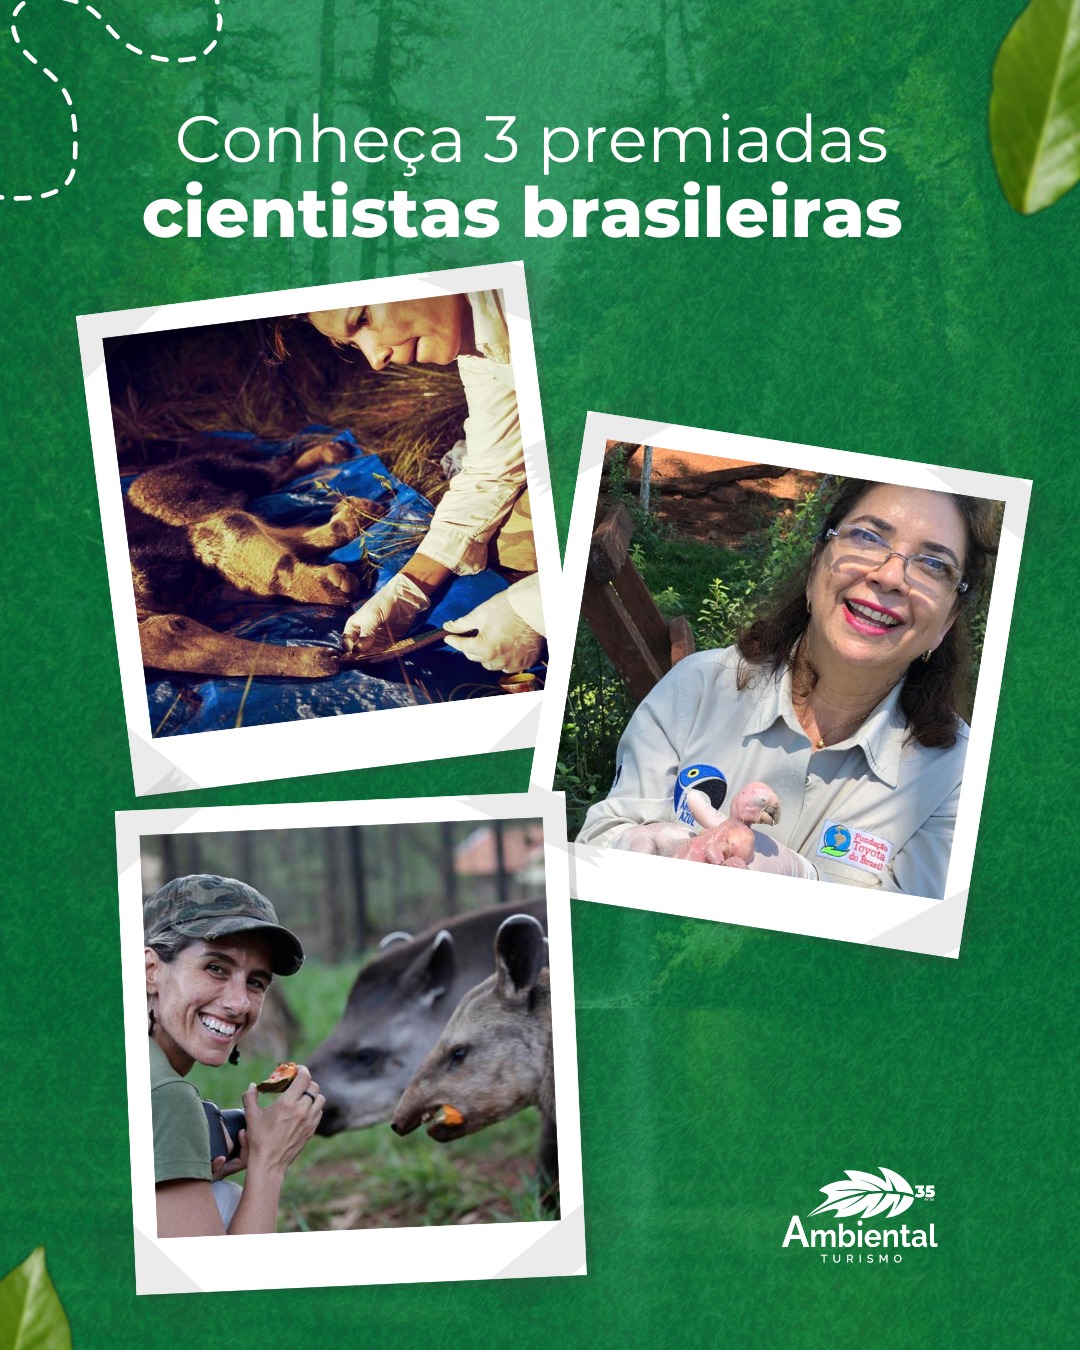 Conheça três premiadas cientistas brasileiras com trabalhos fundamentais para a conservação da natureza